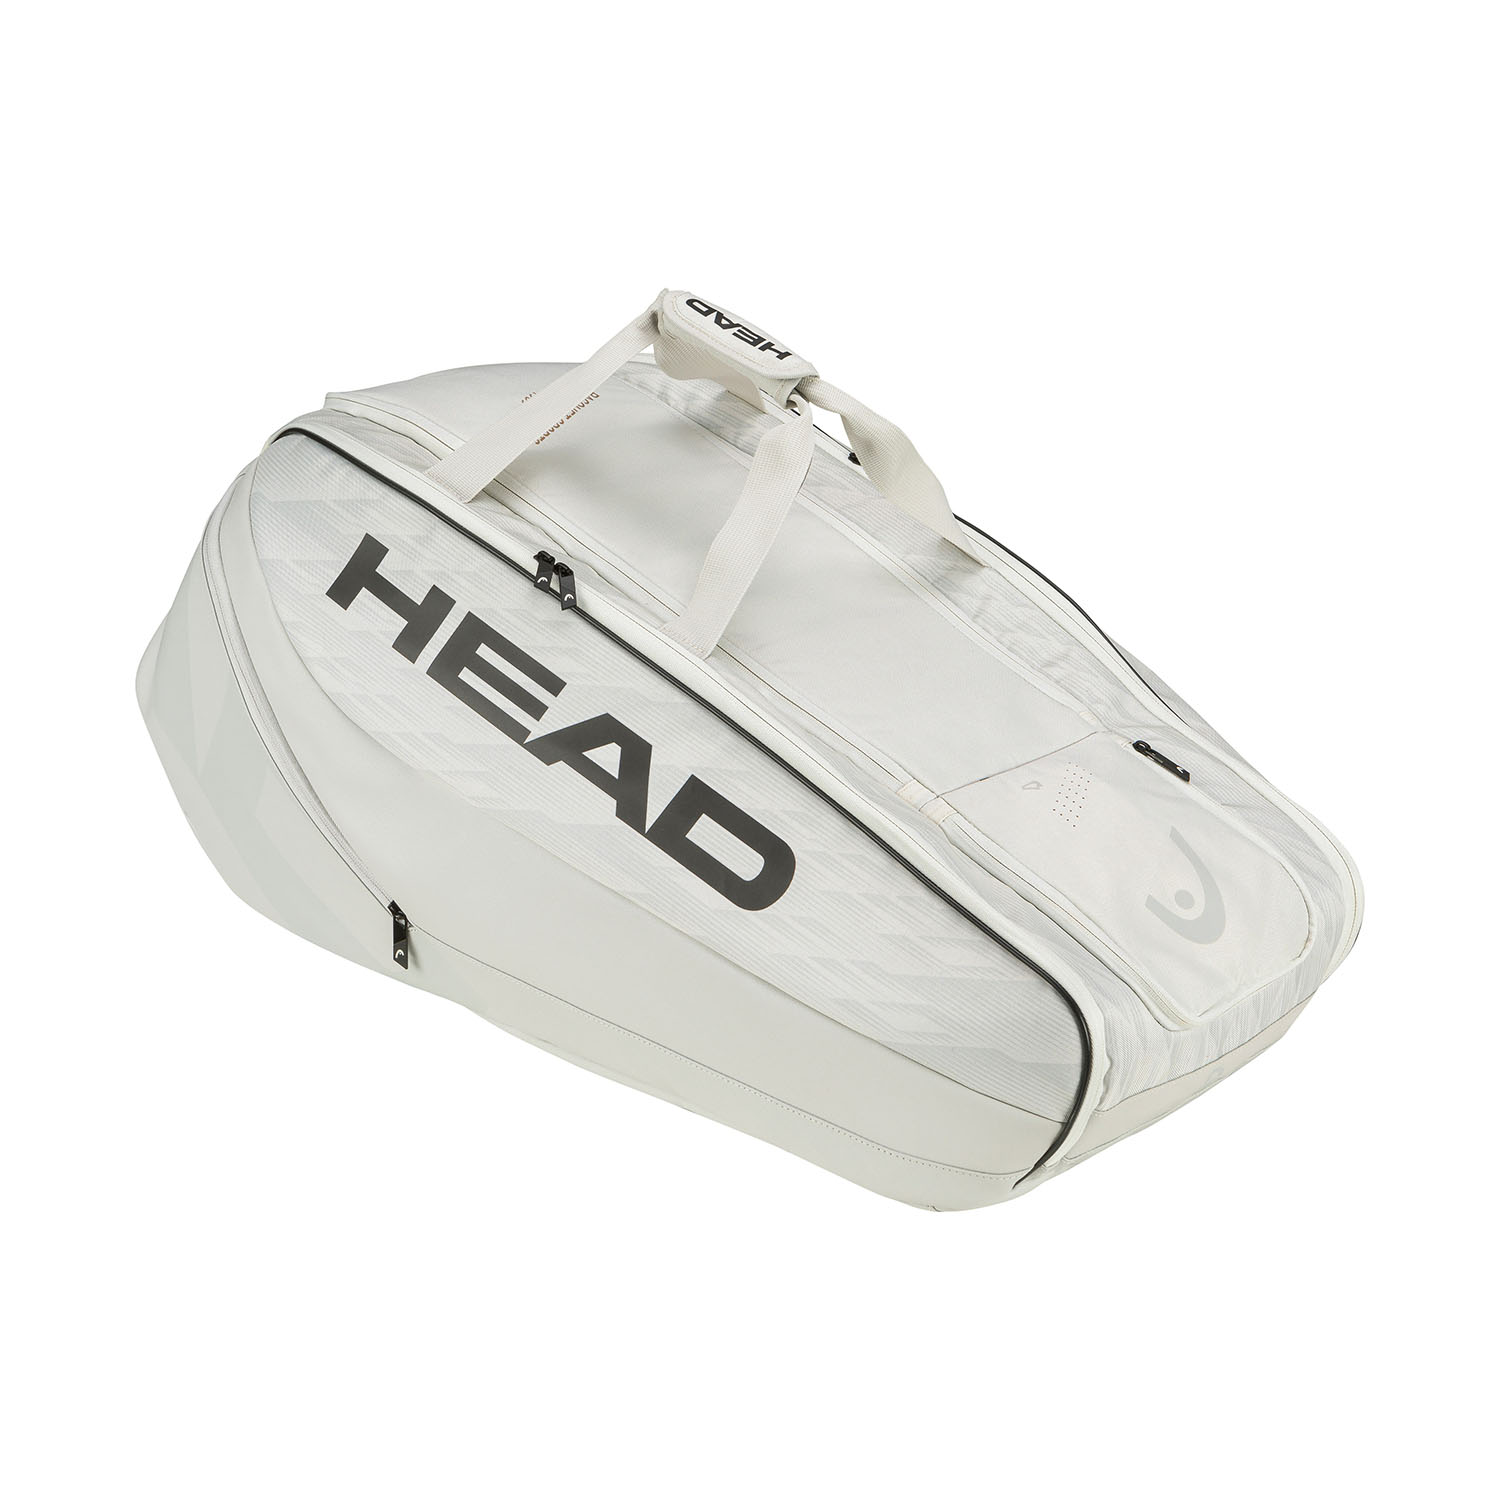 Head Pro X XL Bag - Corduroy White/Black